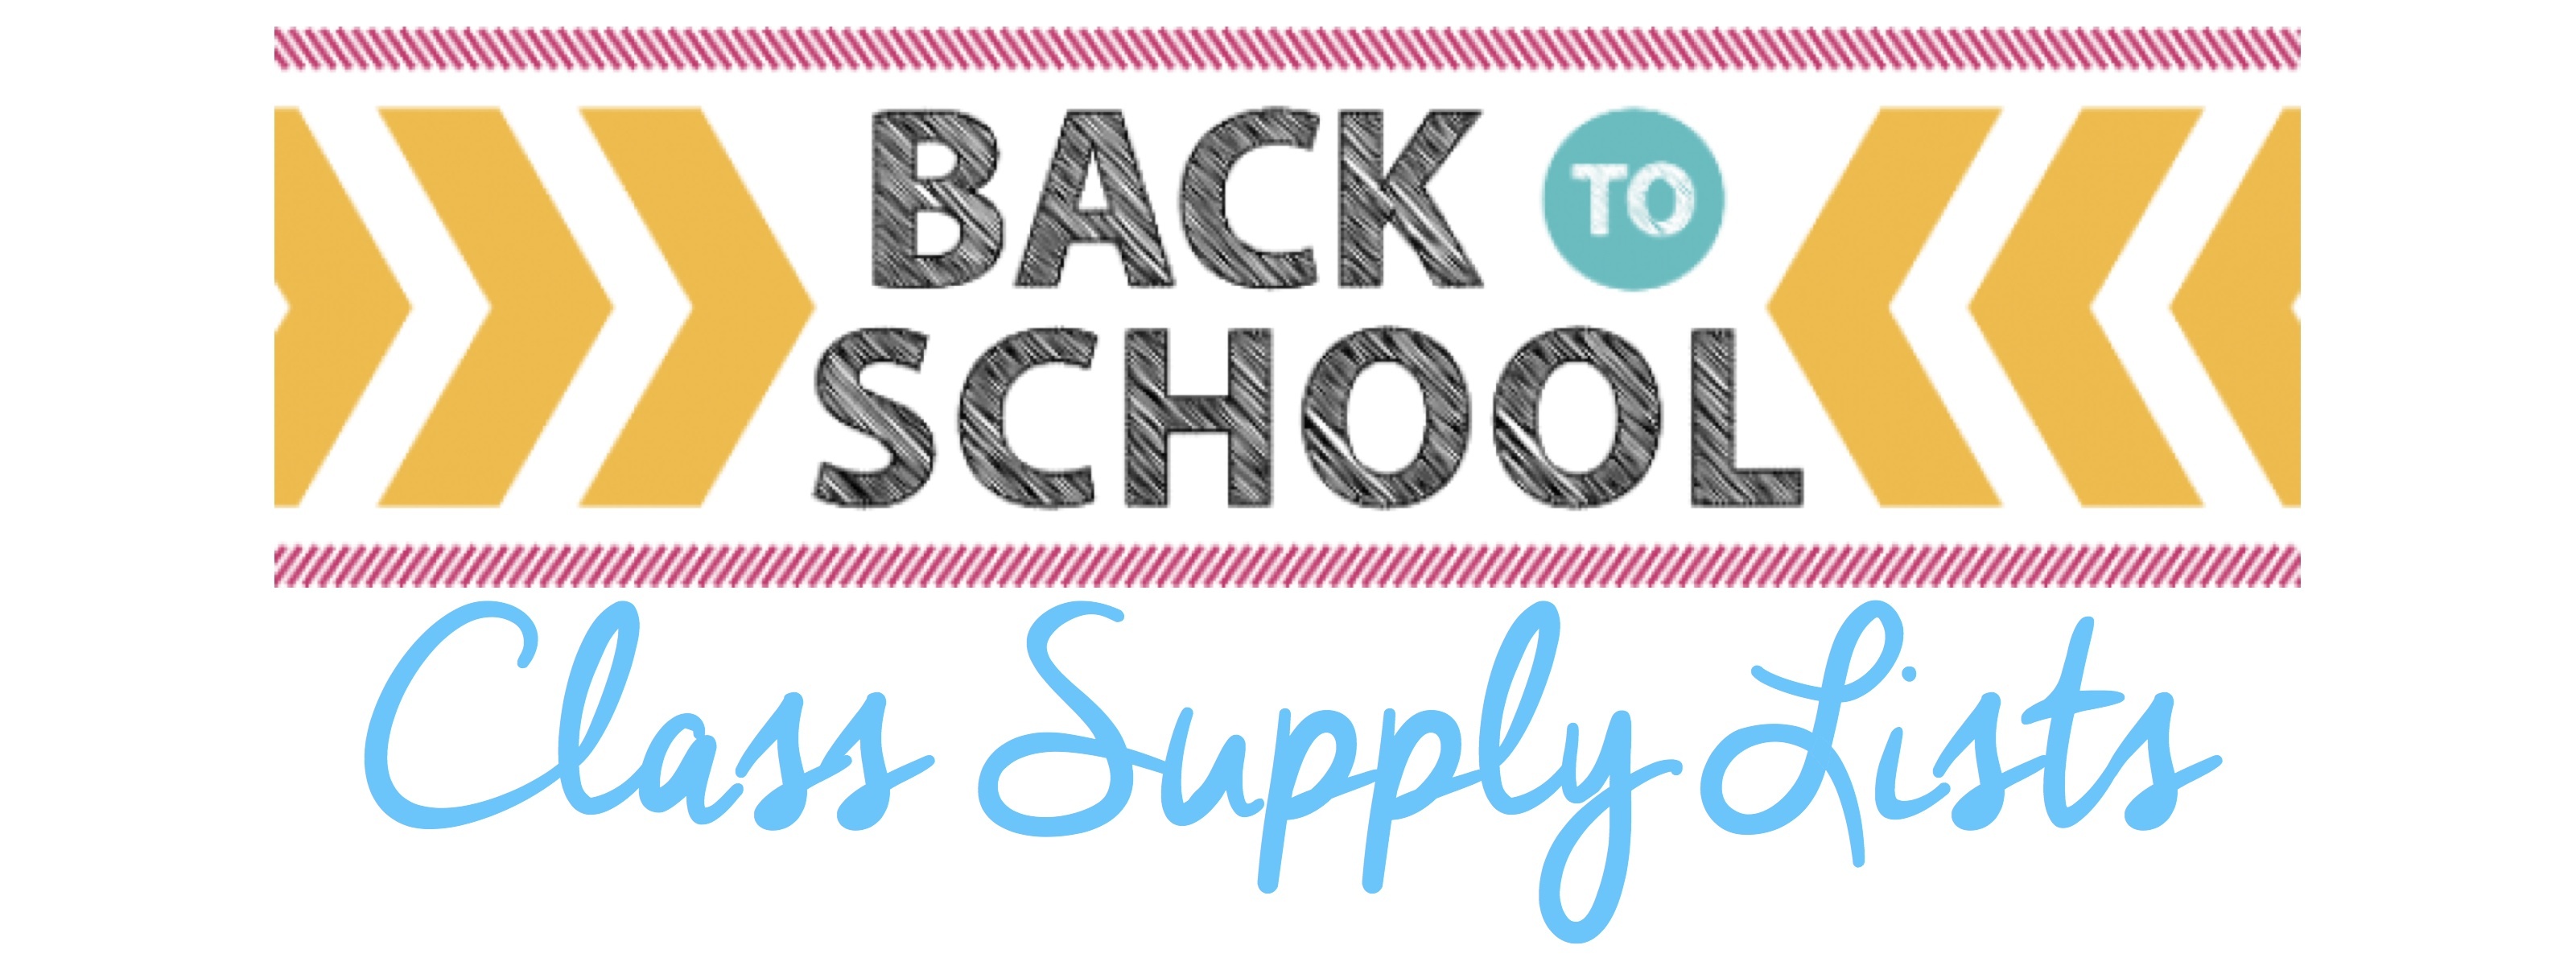 School supply list for high school freshman - Google Search  School  supplies list, High school survival, School shopping list